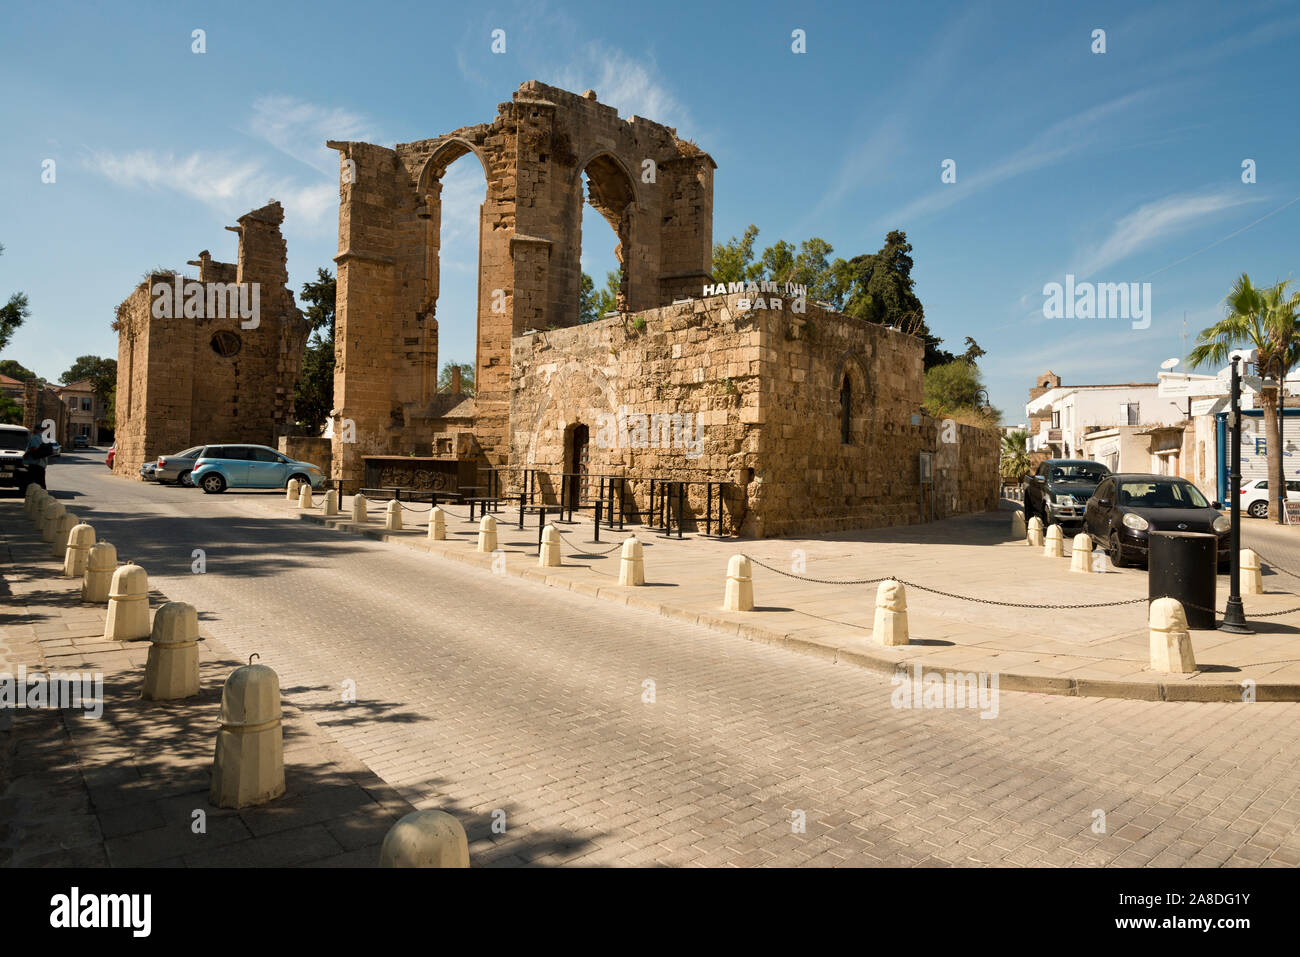 Chiesa di San Francesco uno dei siti storici di Famagosta, la parte settentrionale di Cipro Foto Stock